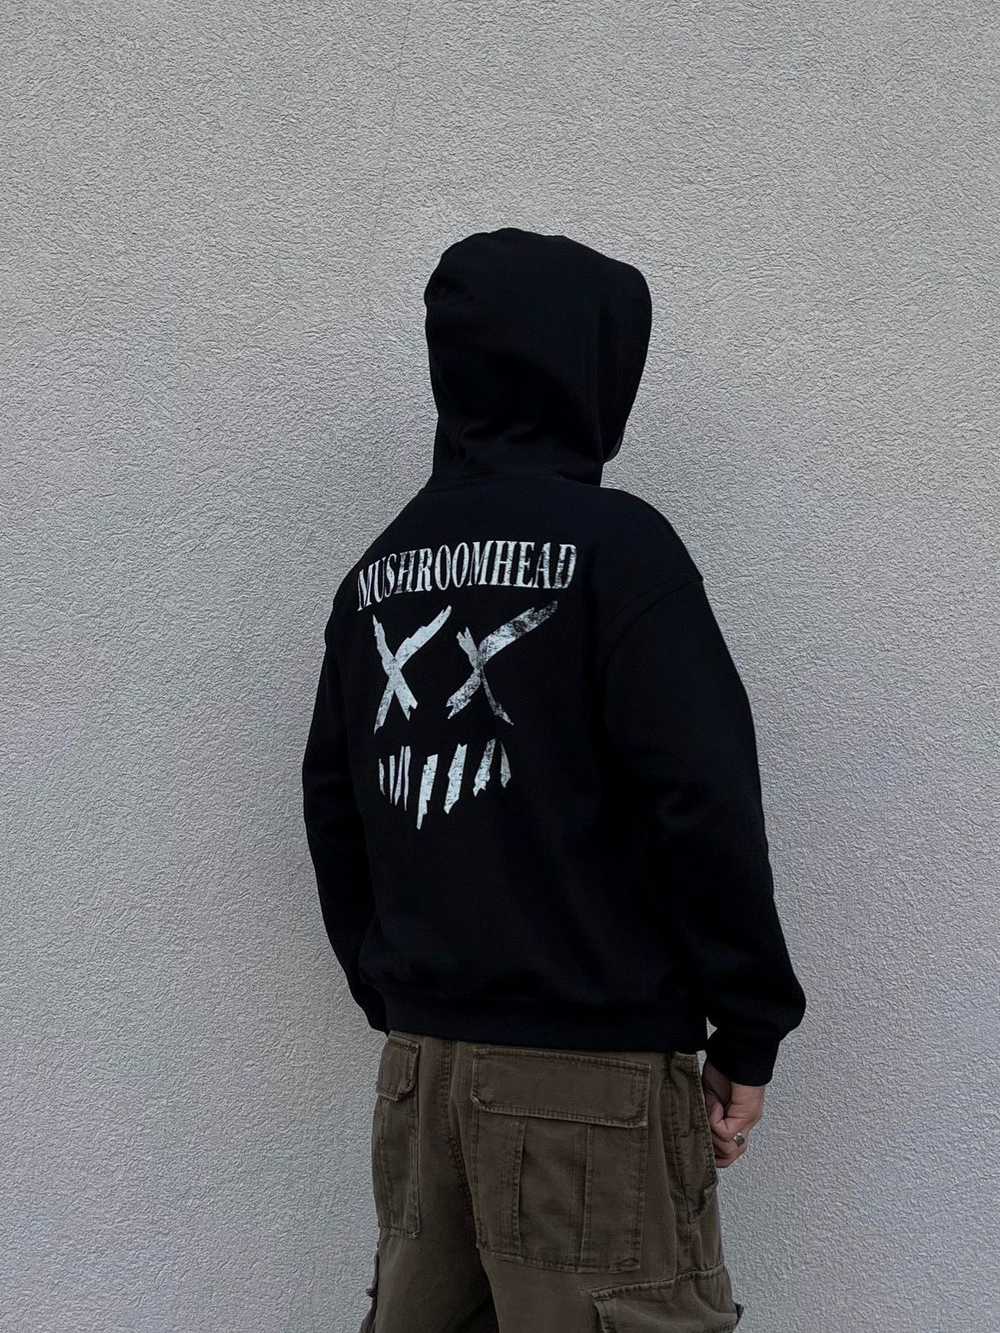 Streetwear Mushroomhead hoodie - image 1